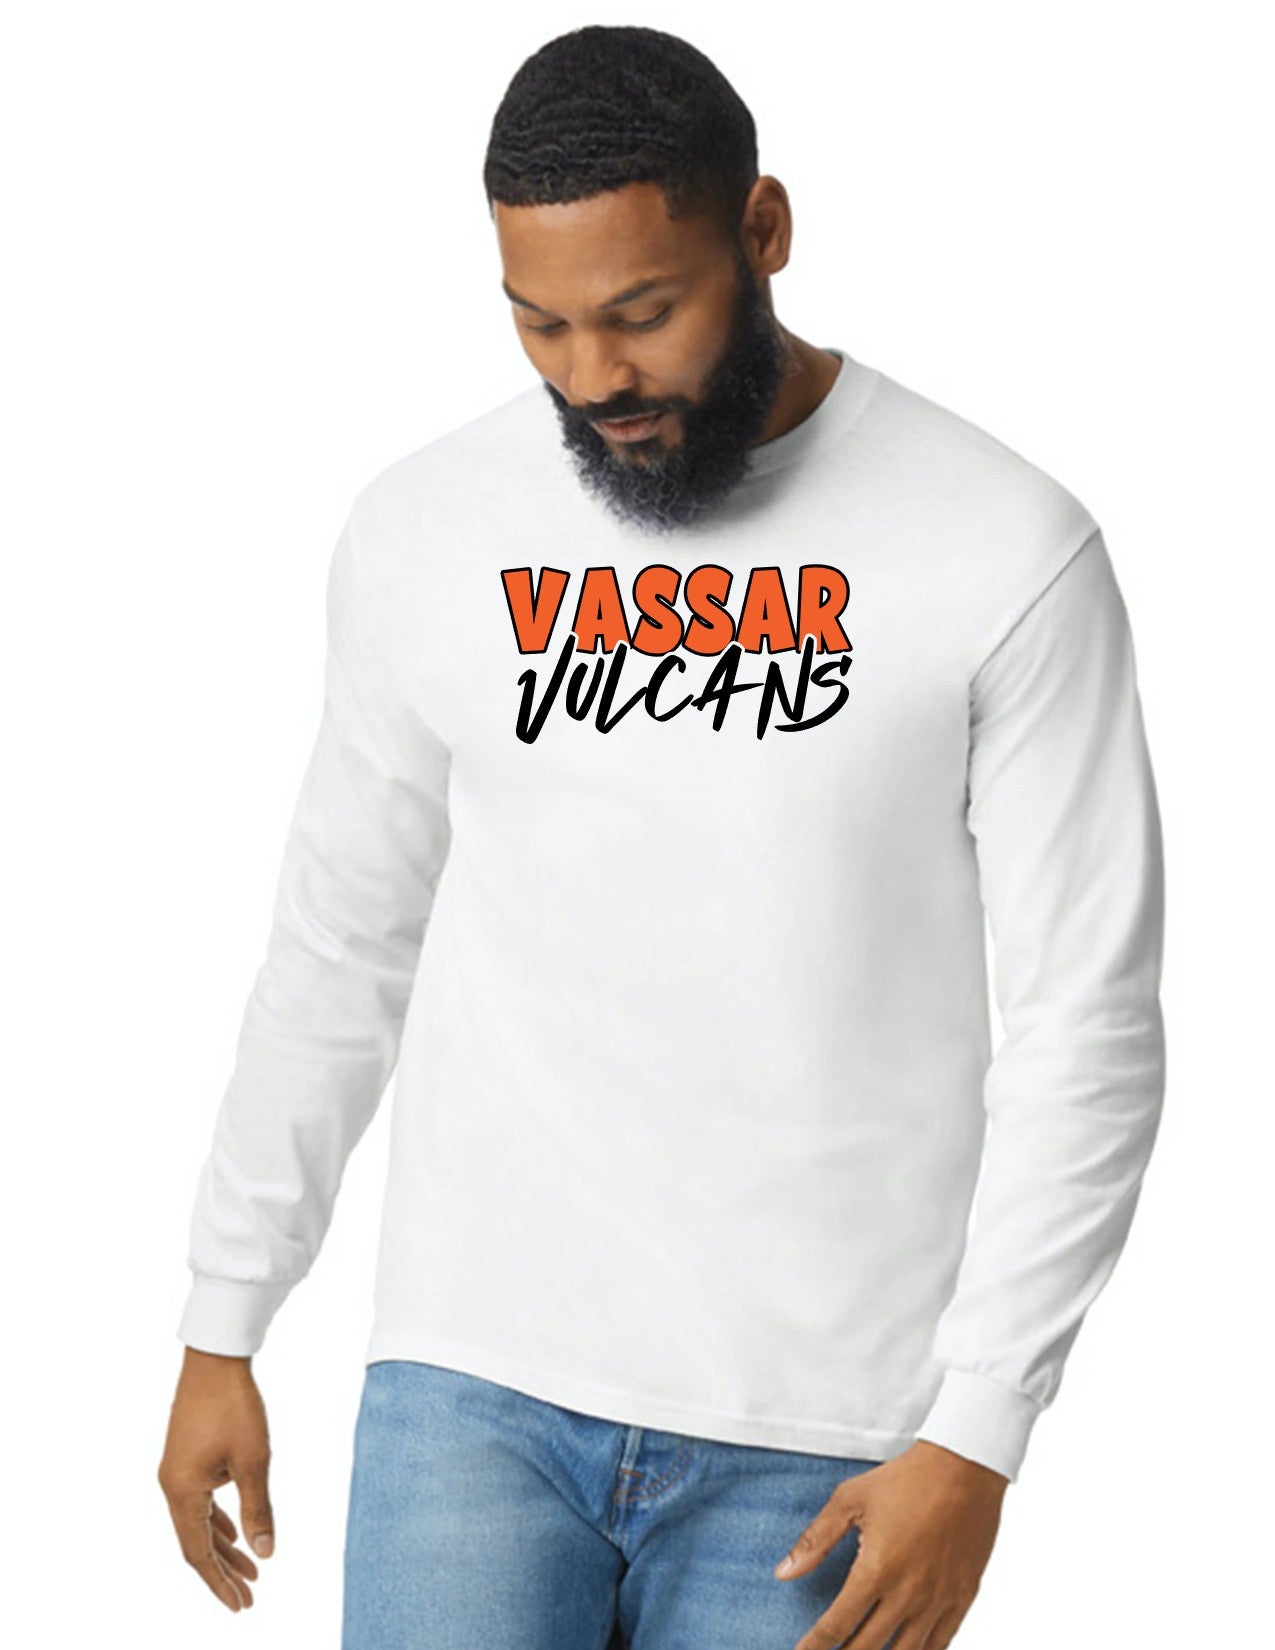 Vassar Vulcans Long Sleeve T-shirt unisex (Adult)